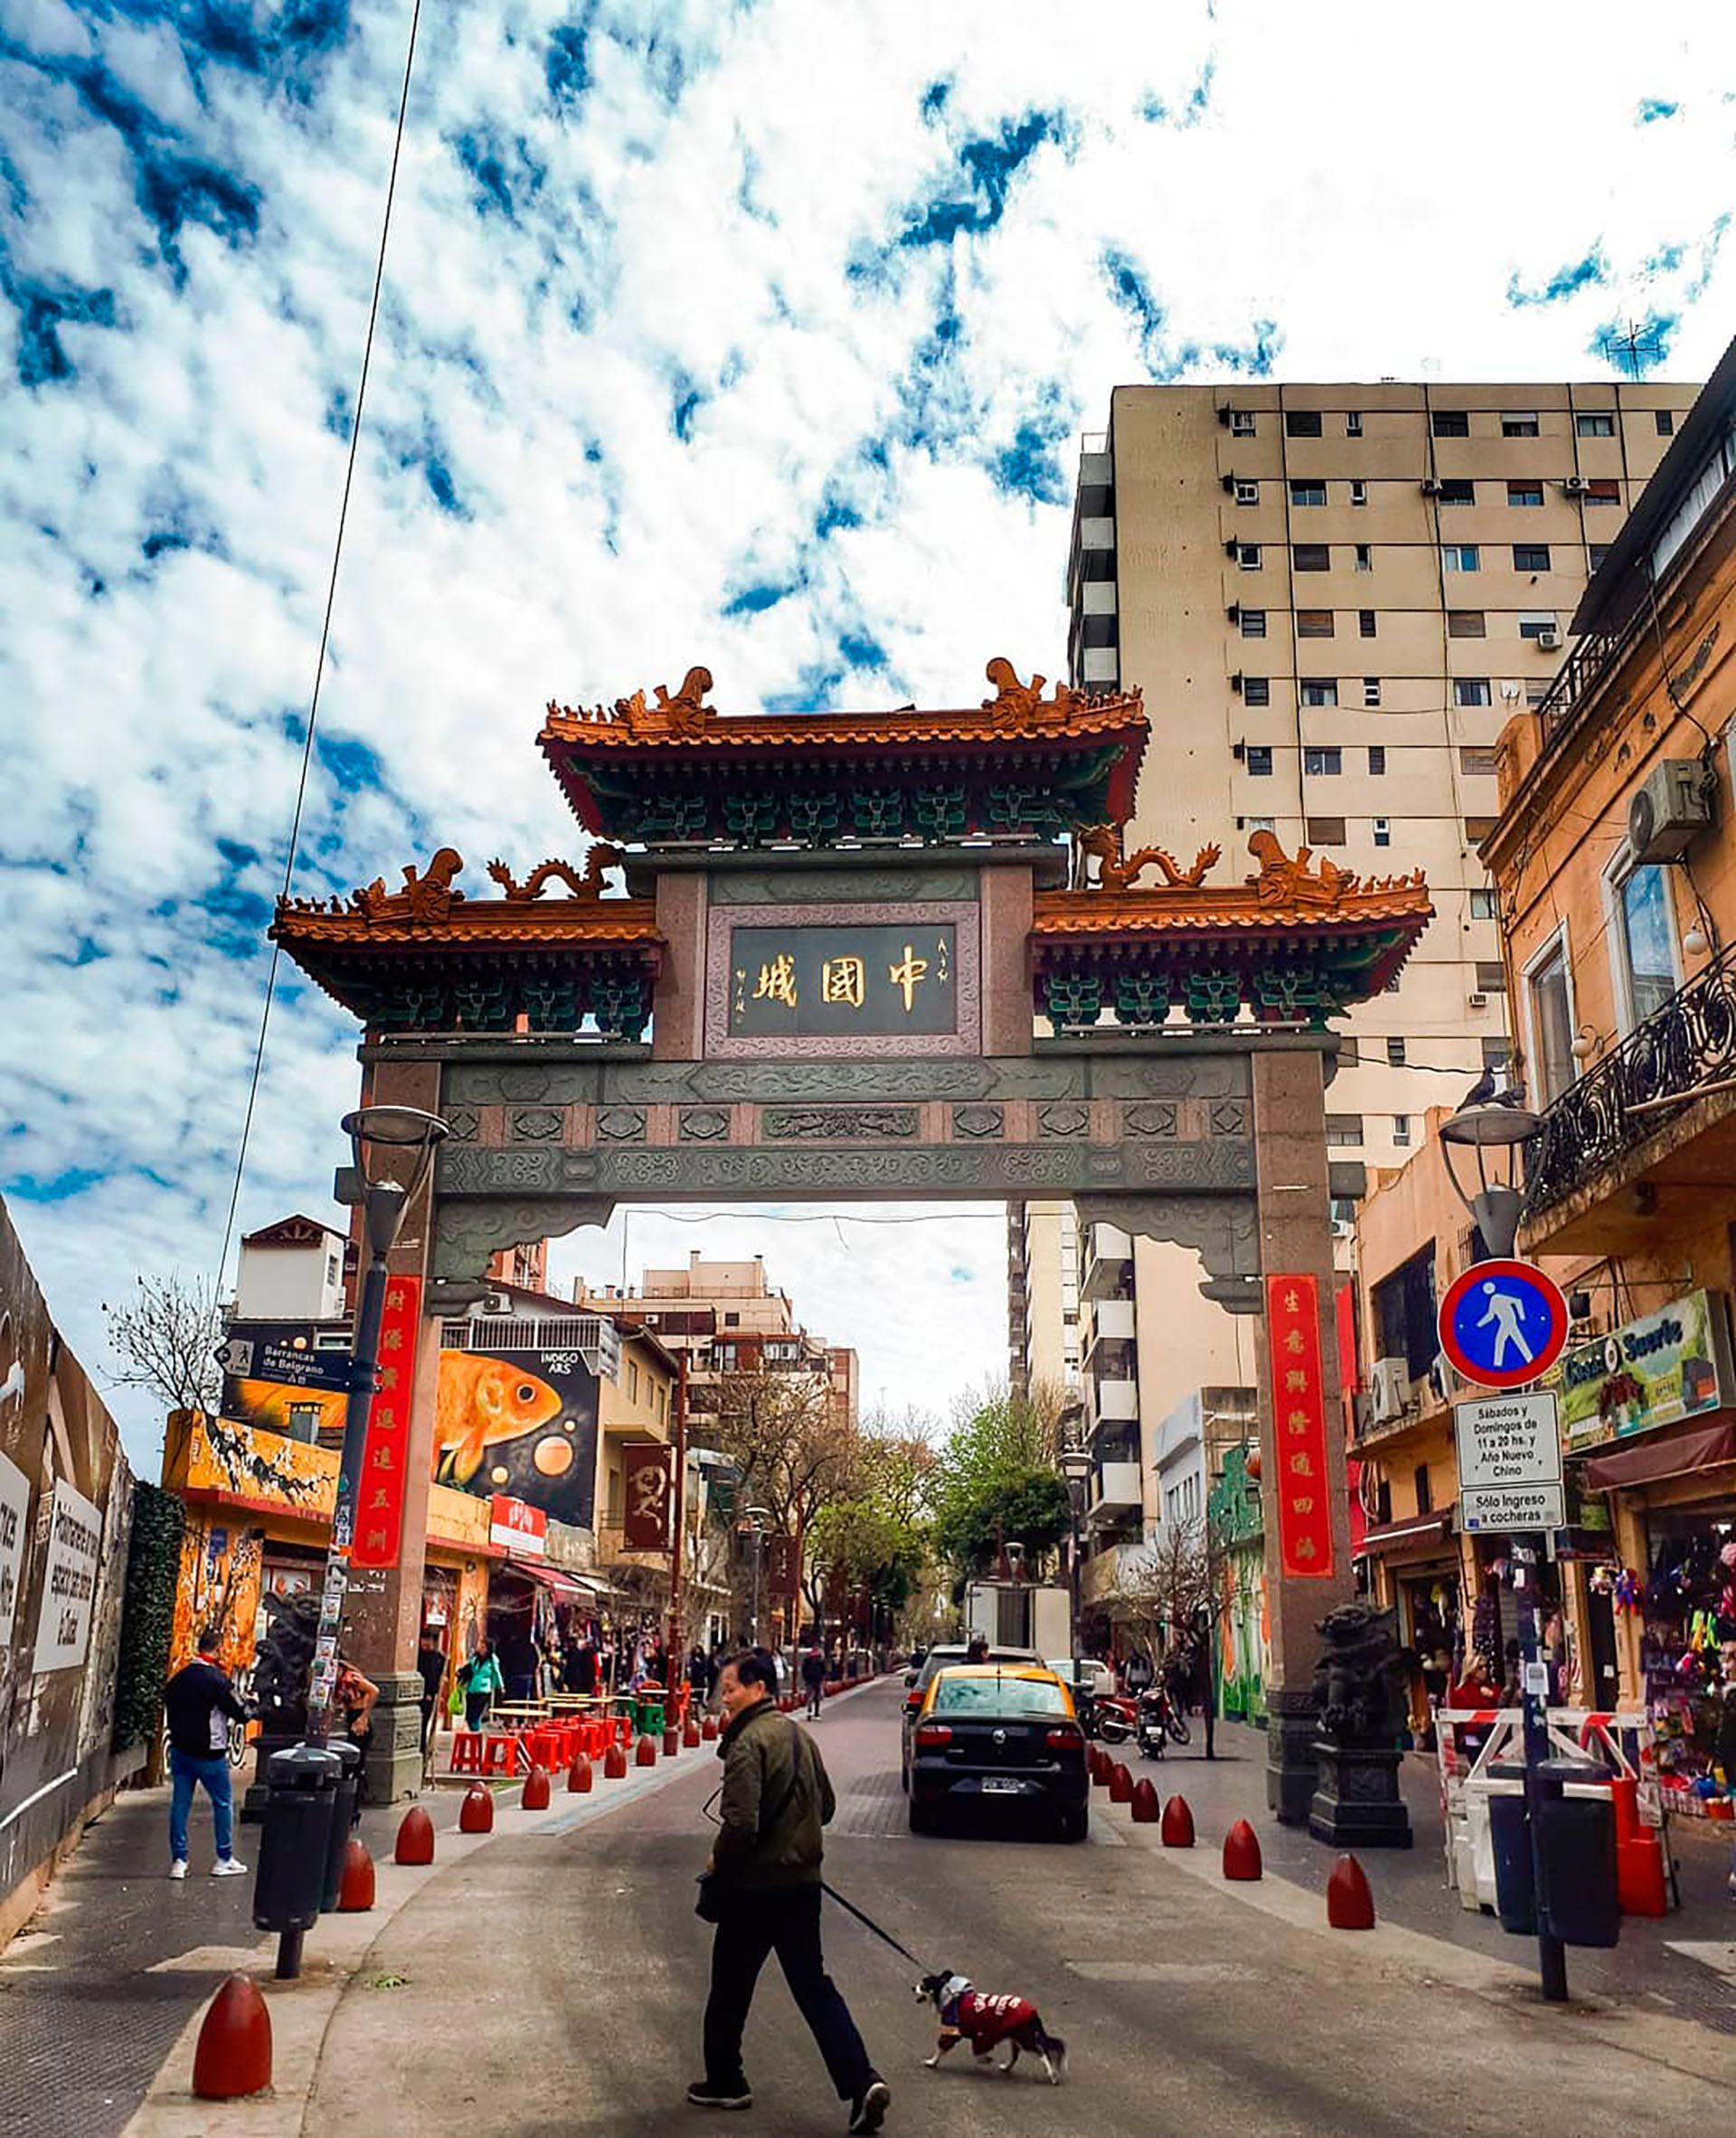 El arco 'chino' da la bienvenida al barrio que fusiona distinas culturas orientales (@rocio.orgoroso)